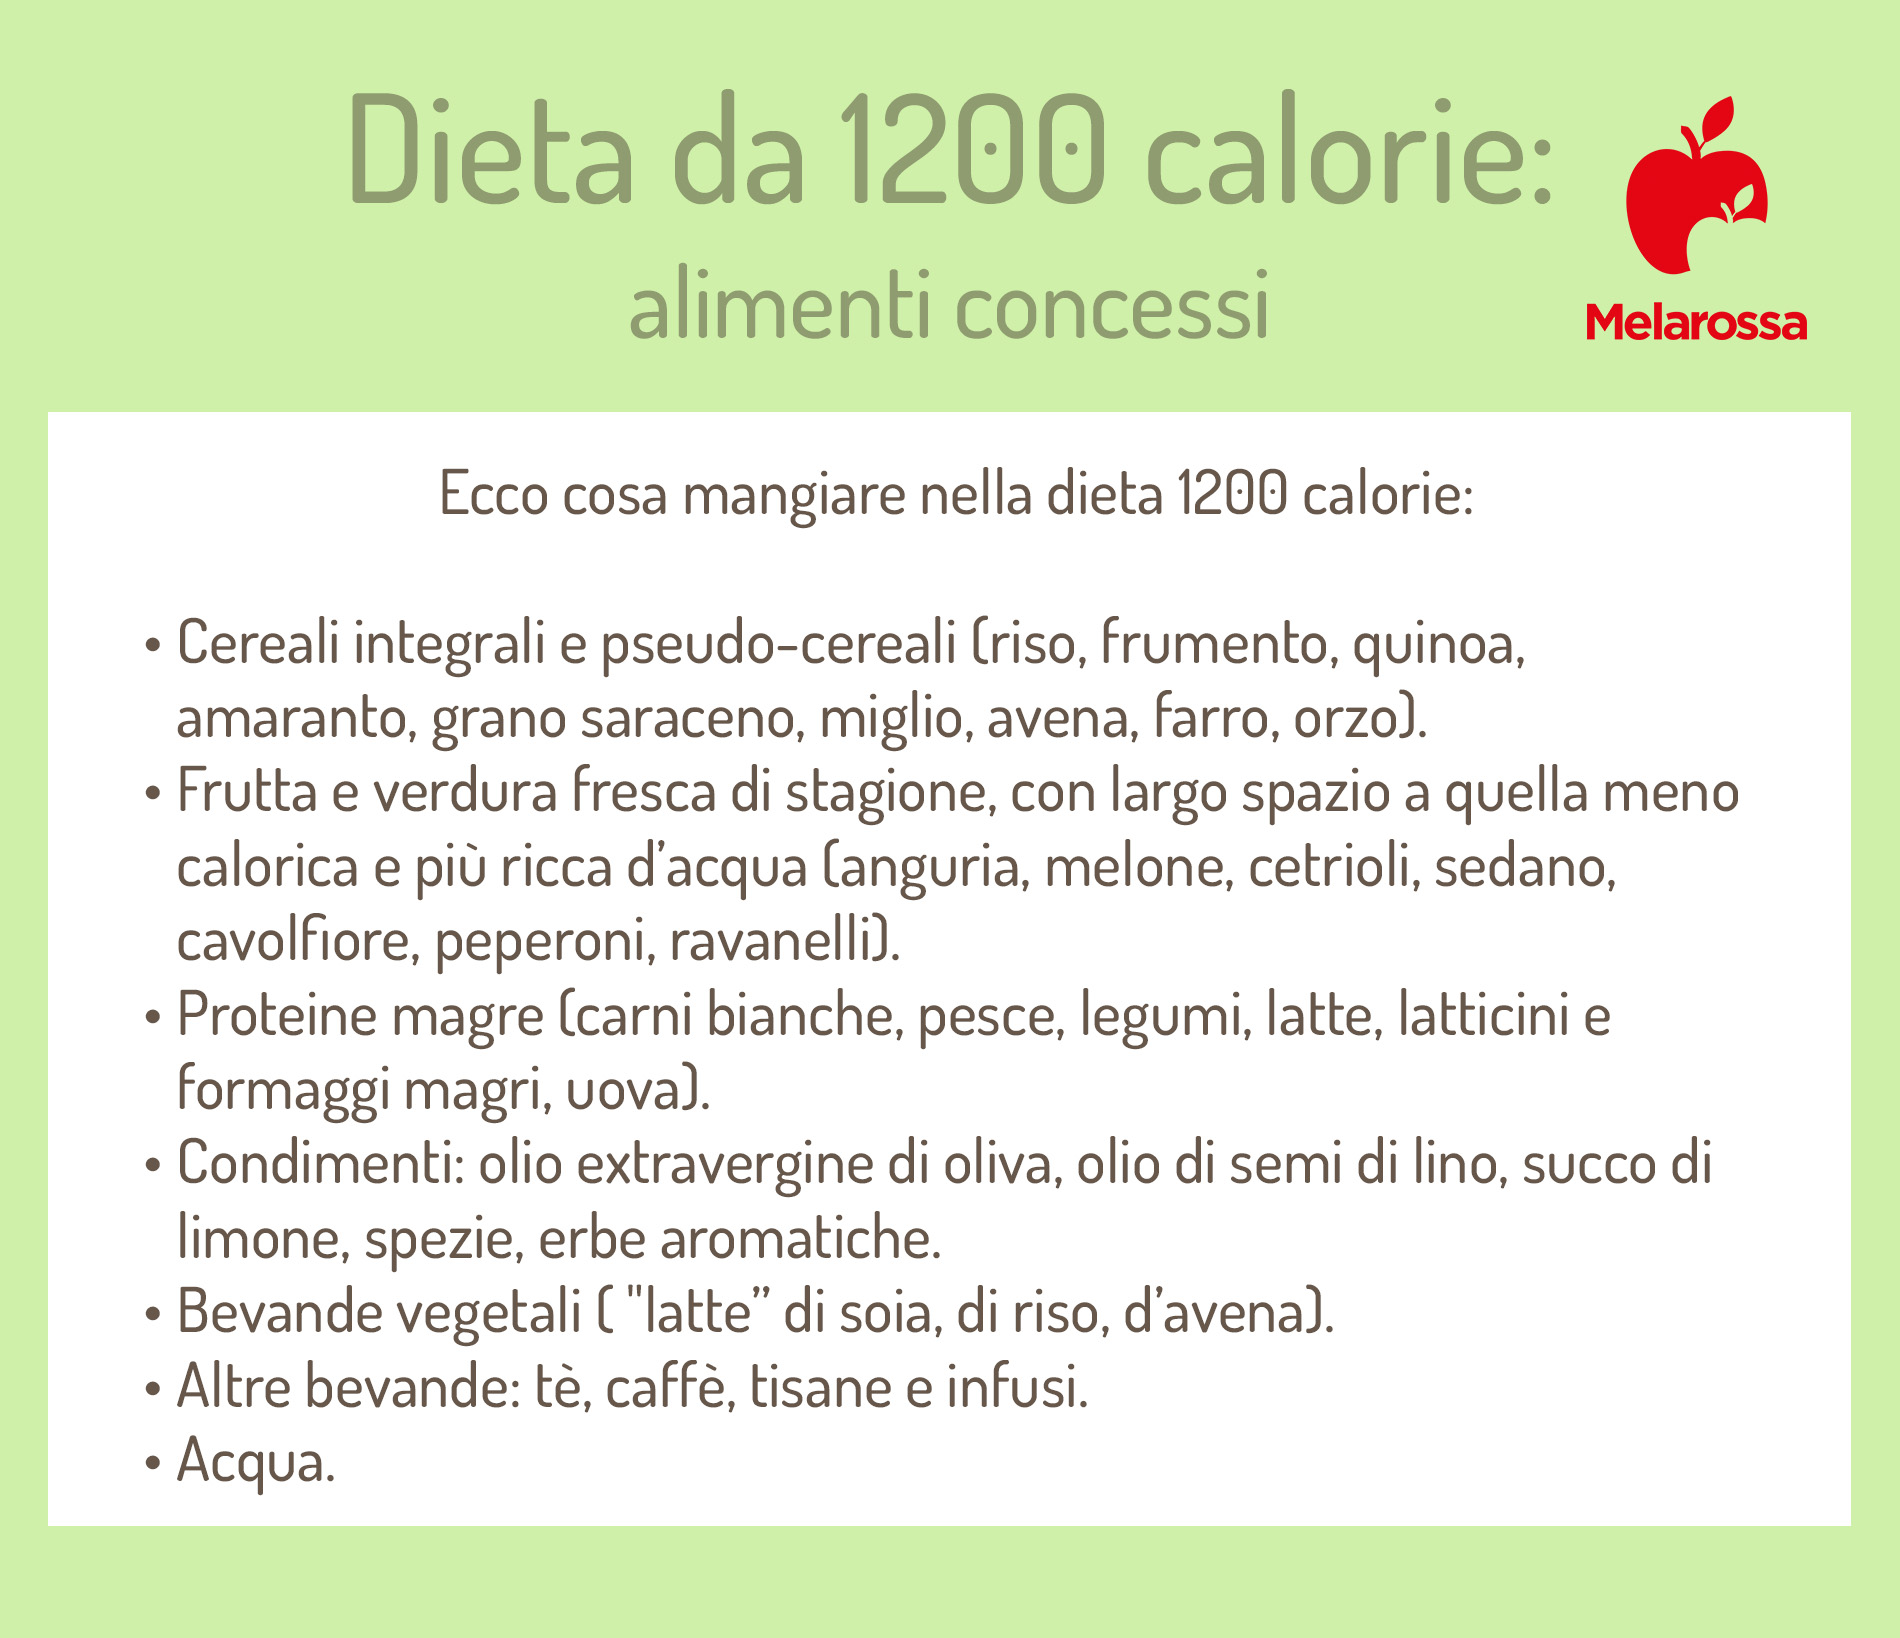 dieta da 1200 calorie: cosa mangiare 